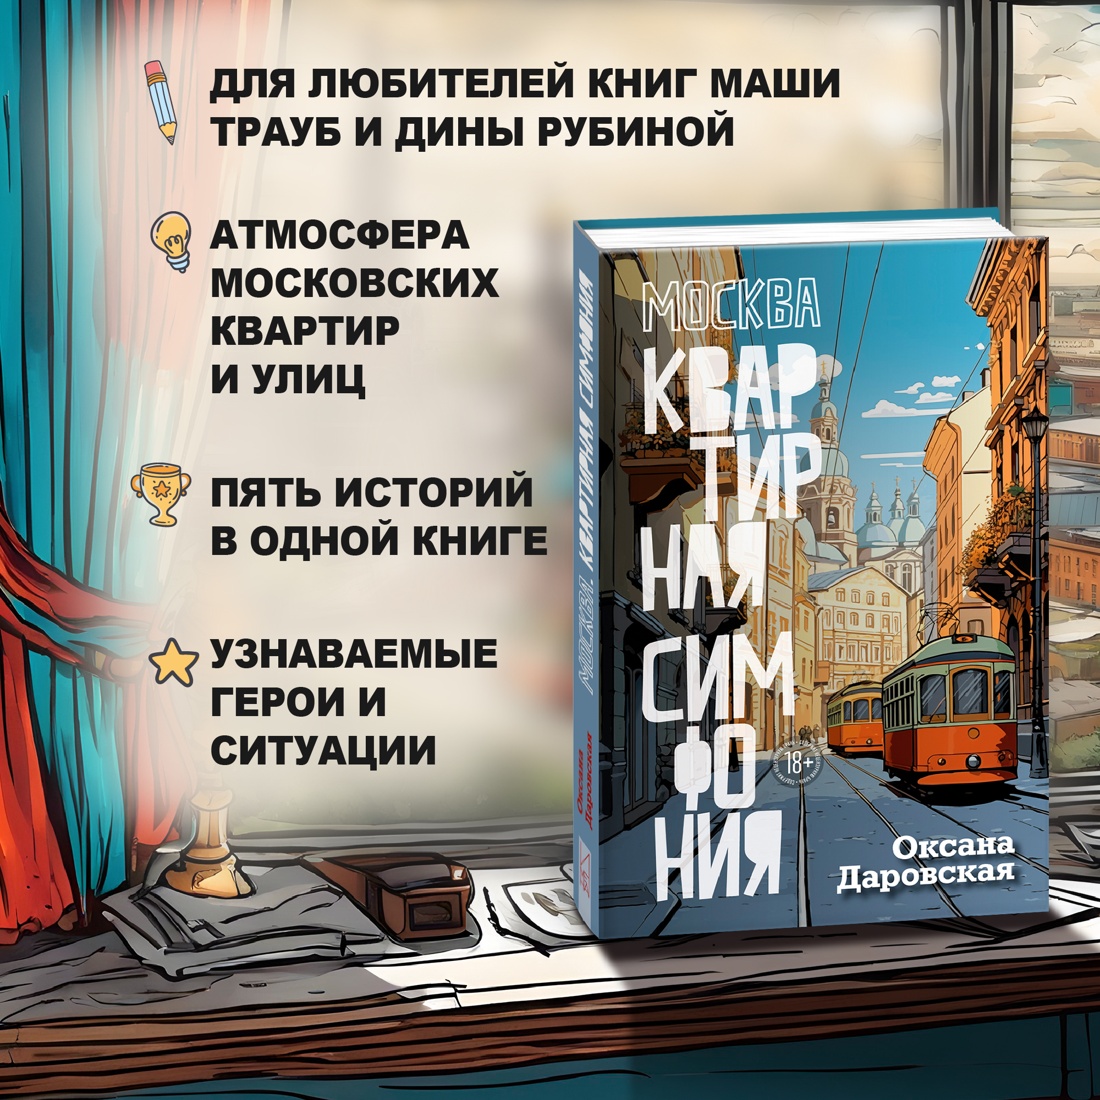 Промо материал к книге "Москва. Квартирная симфония" №1